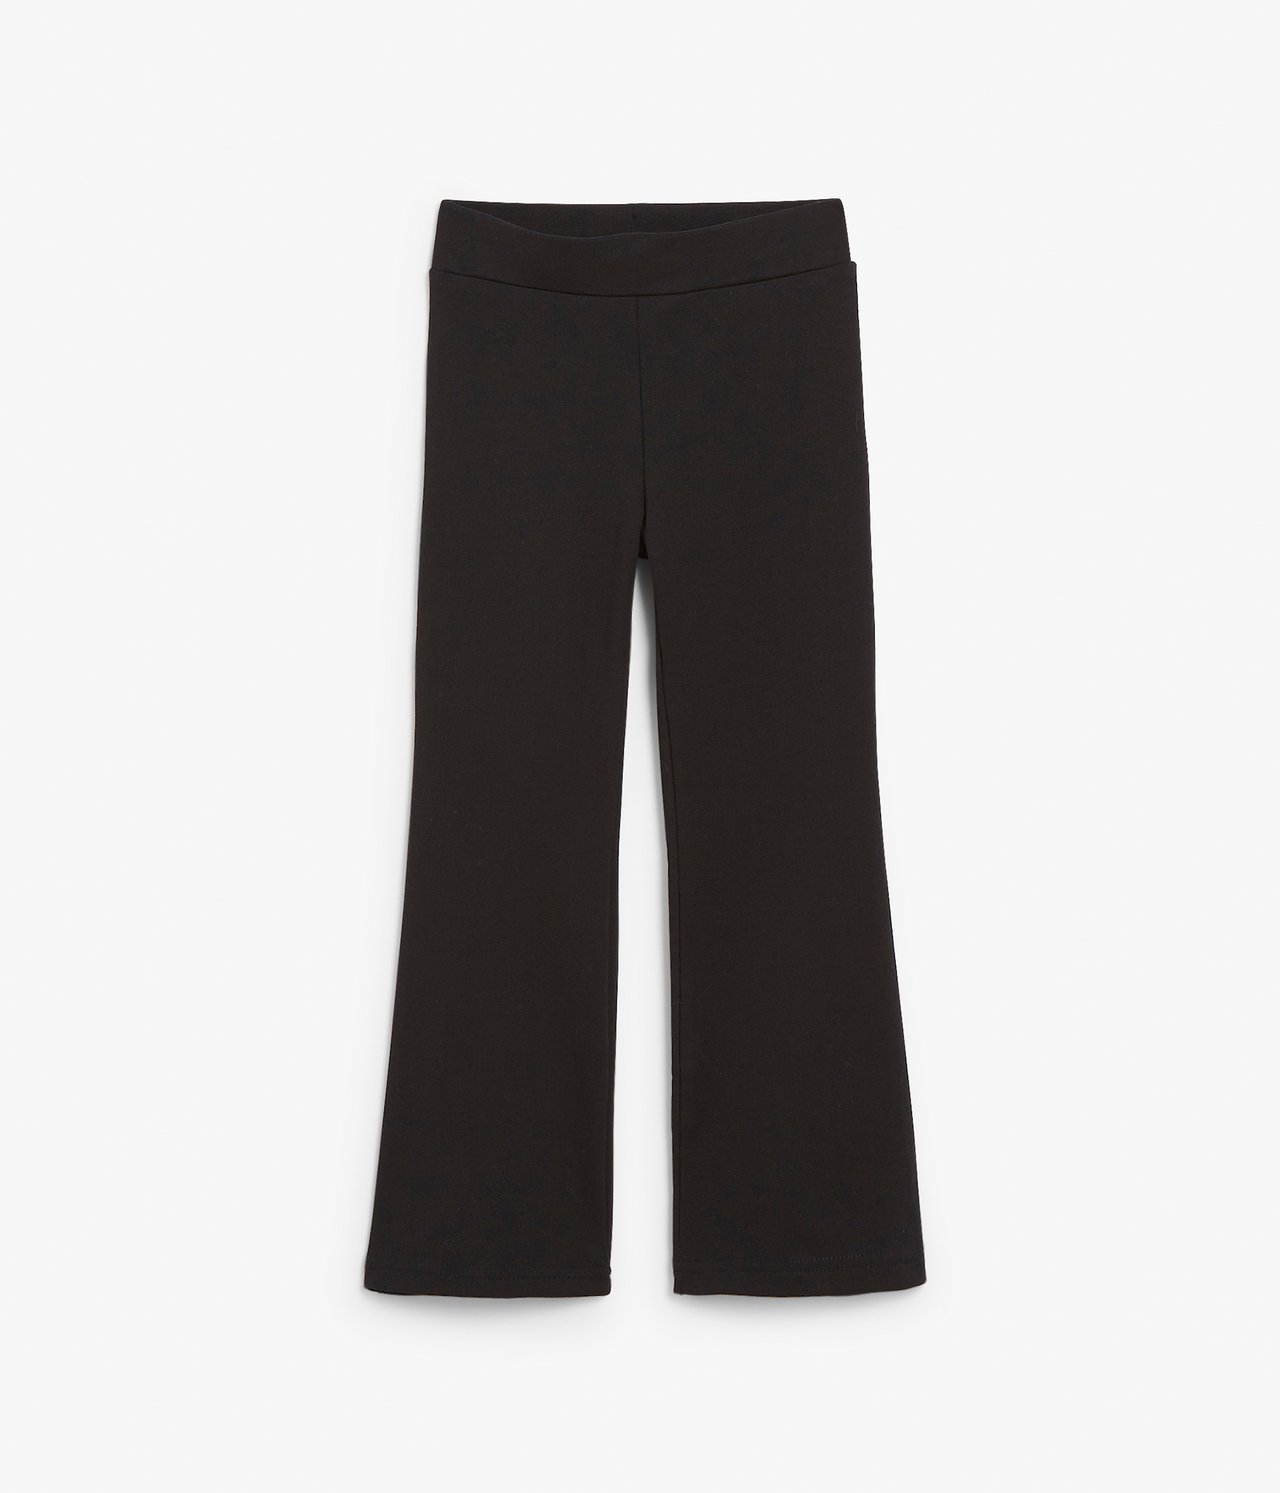 Rozszerzane spodnie z trykotu - Czarne - 5